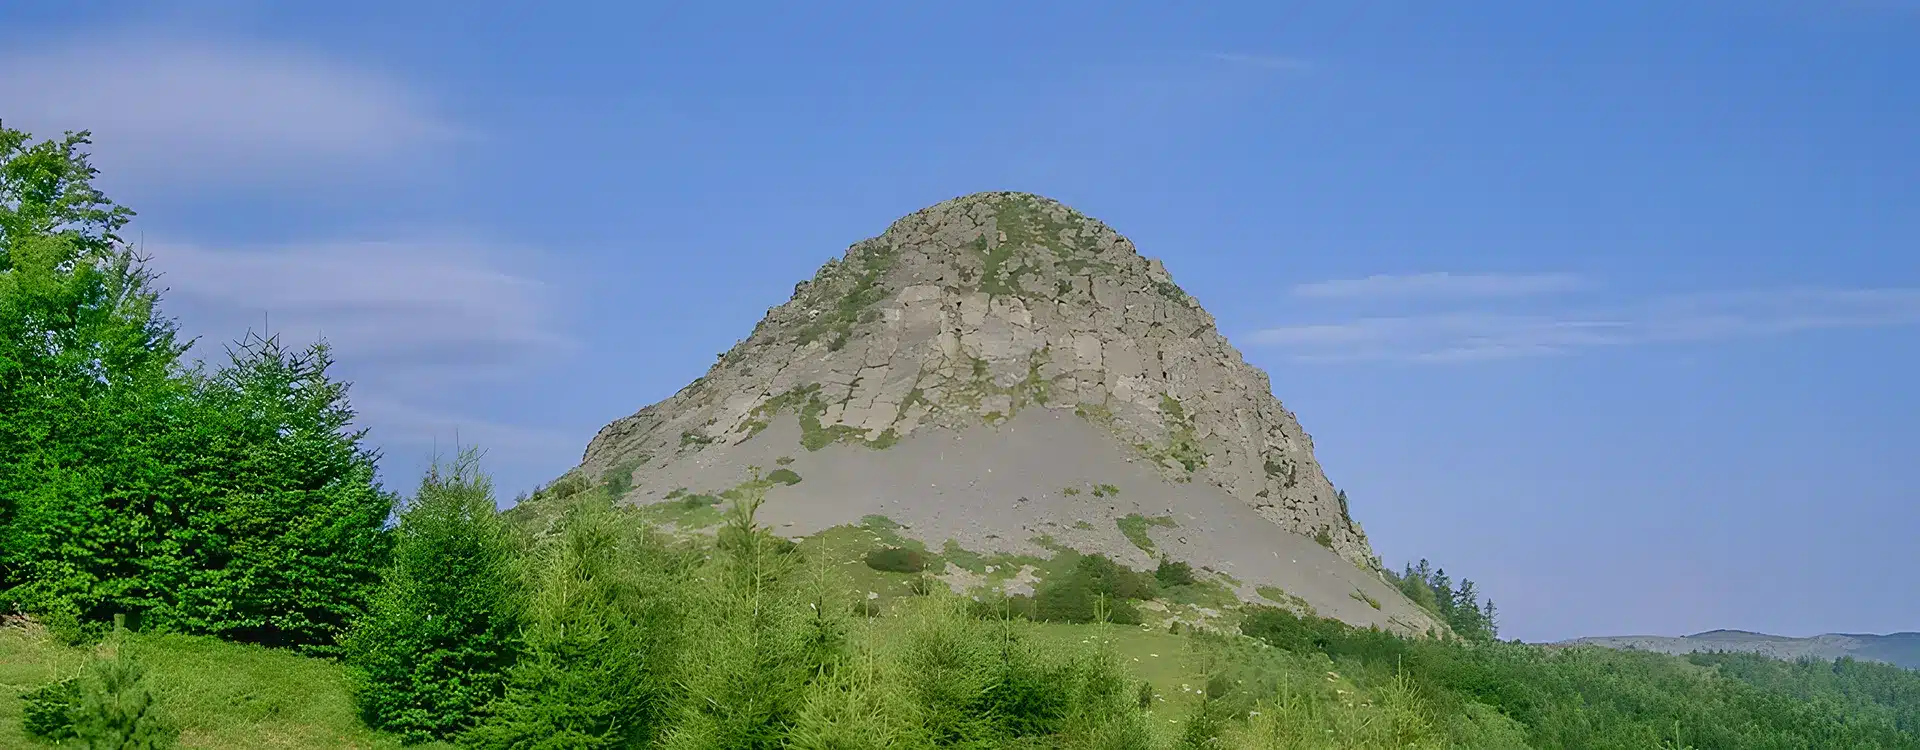 Le mont Gerbier de Jonc : le berceau de la Loire